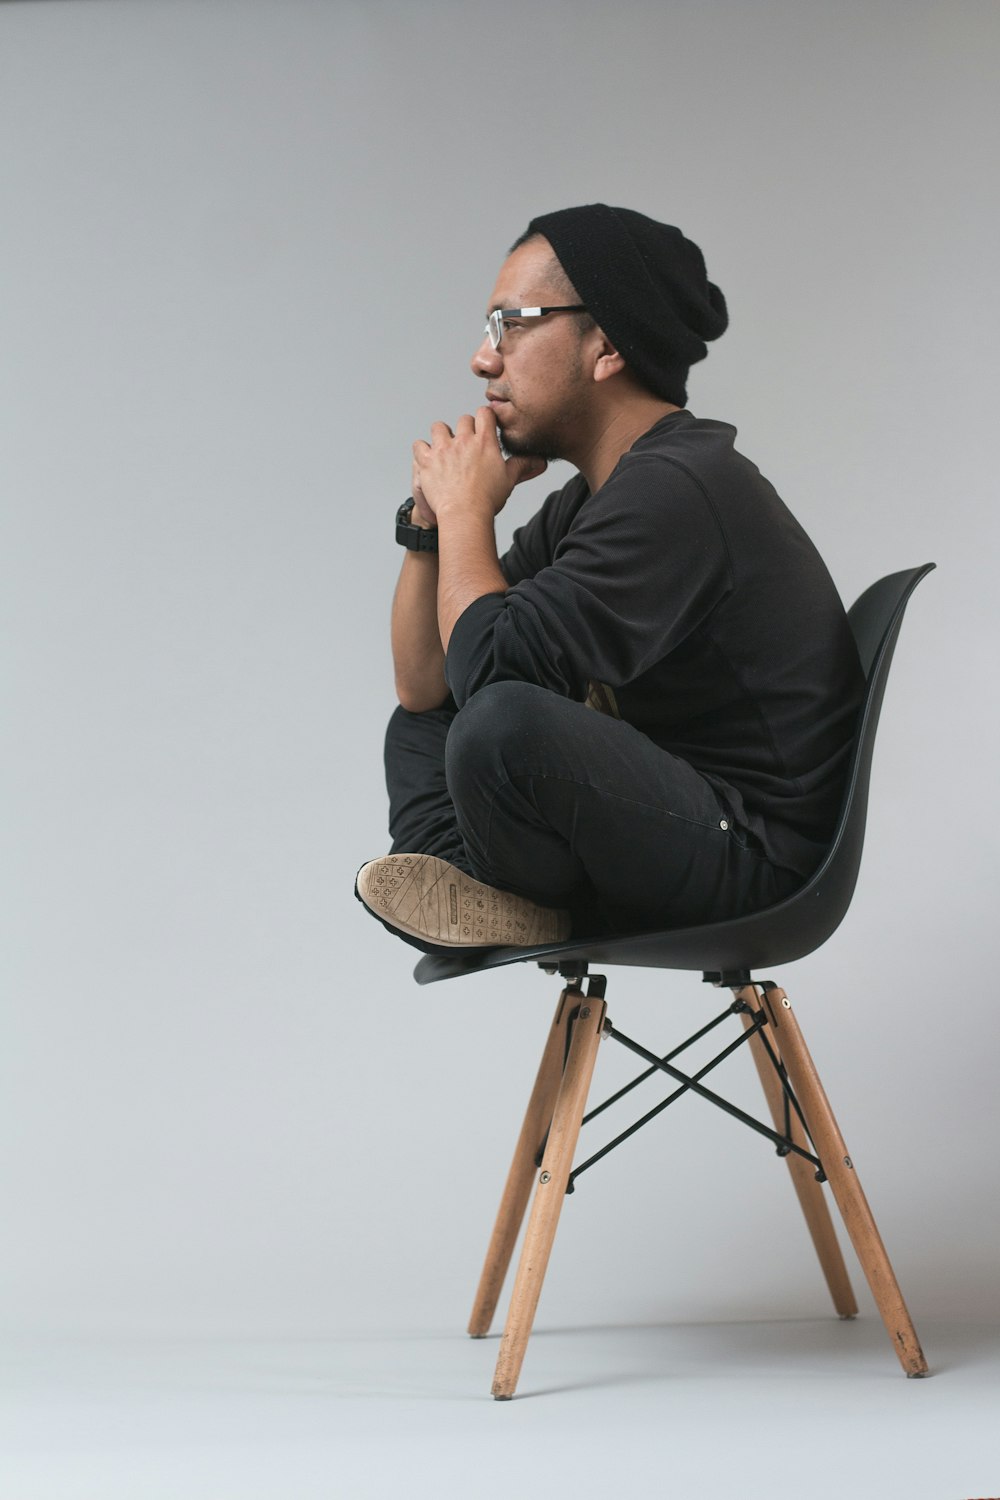 Homme assis sur une chaise